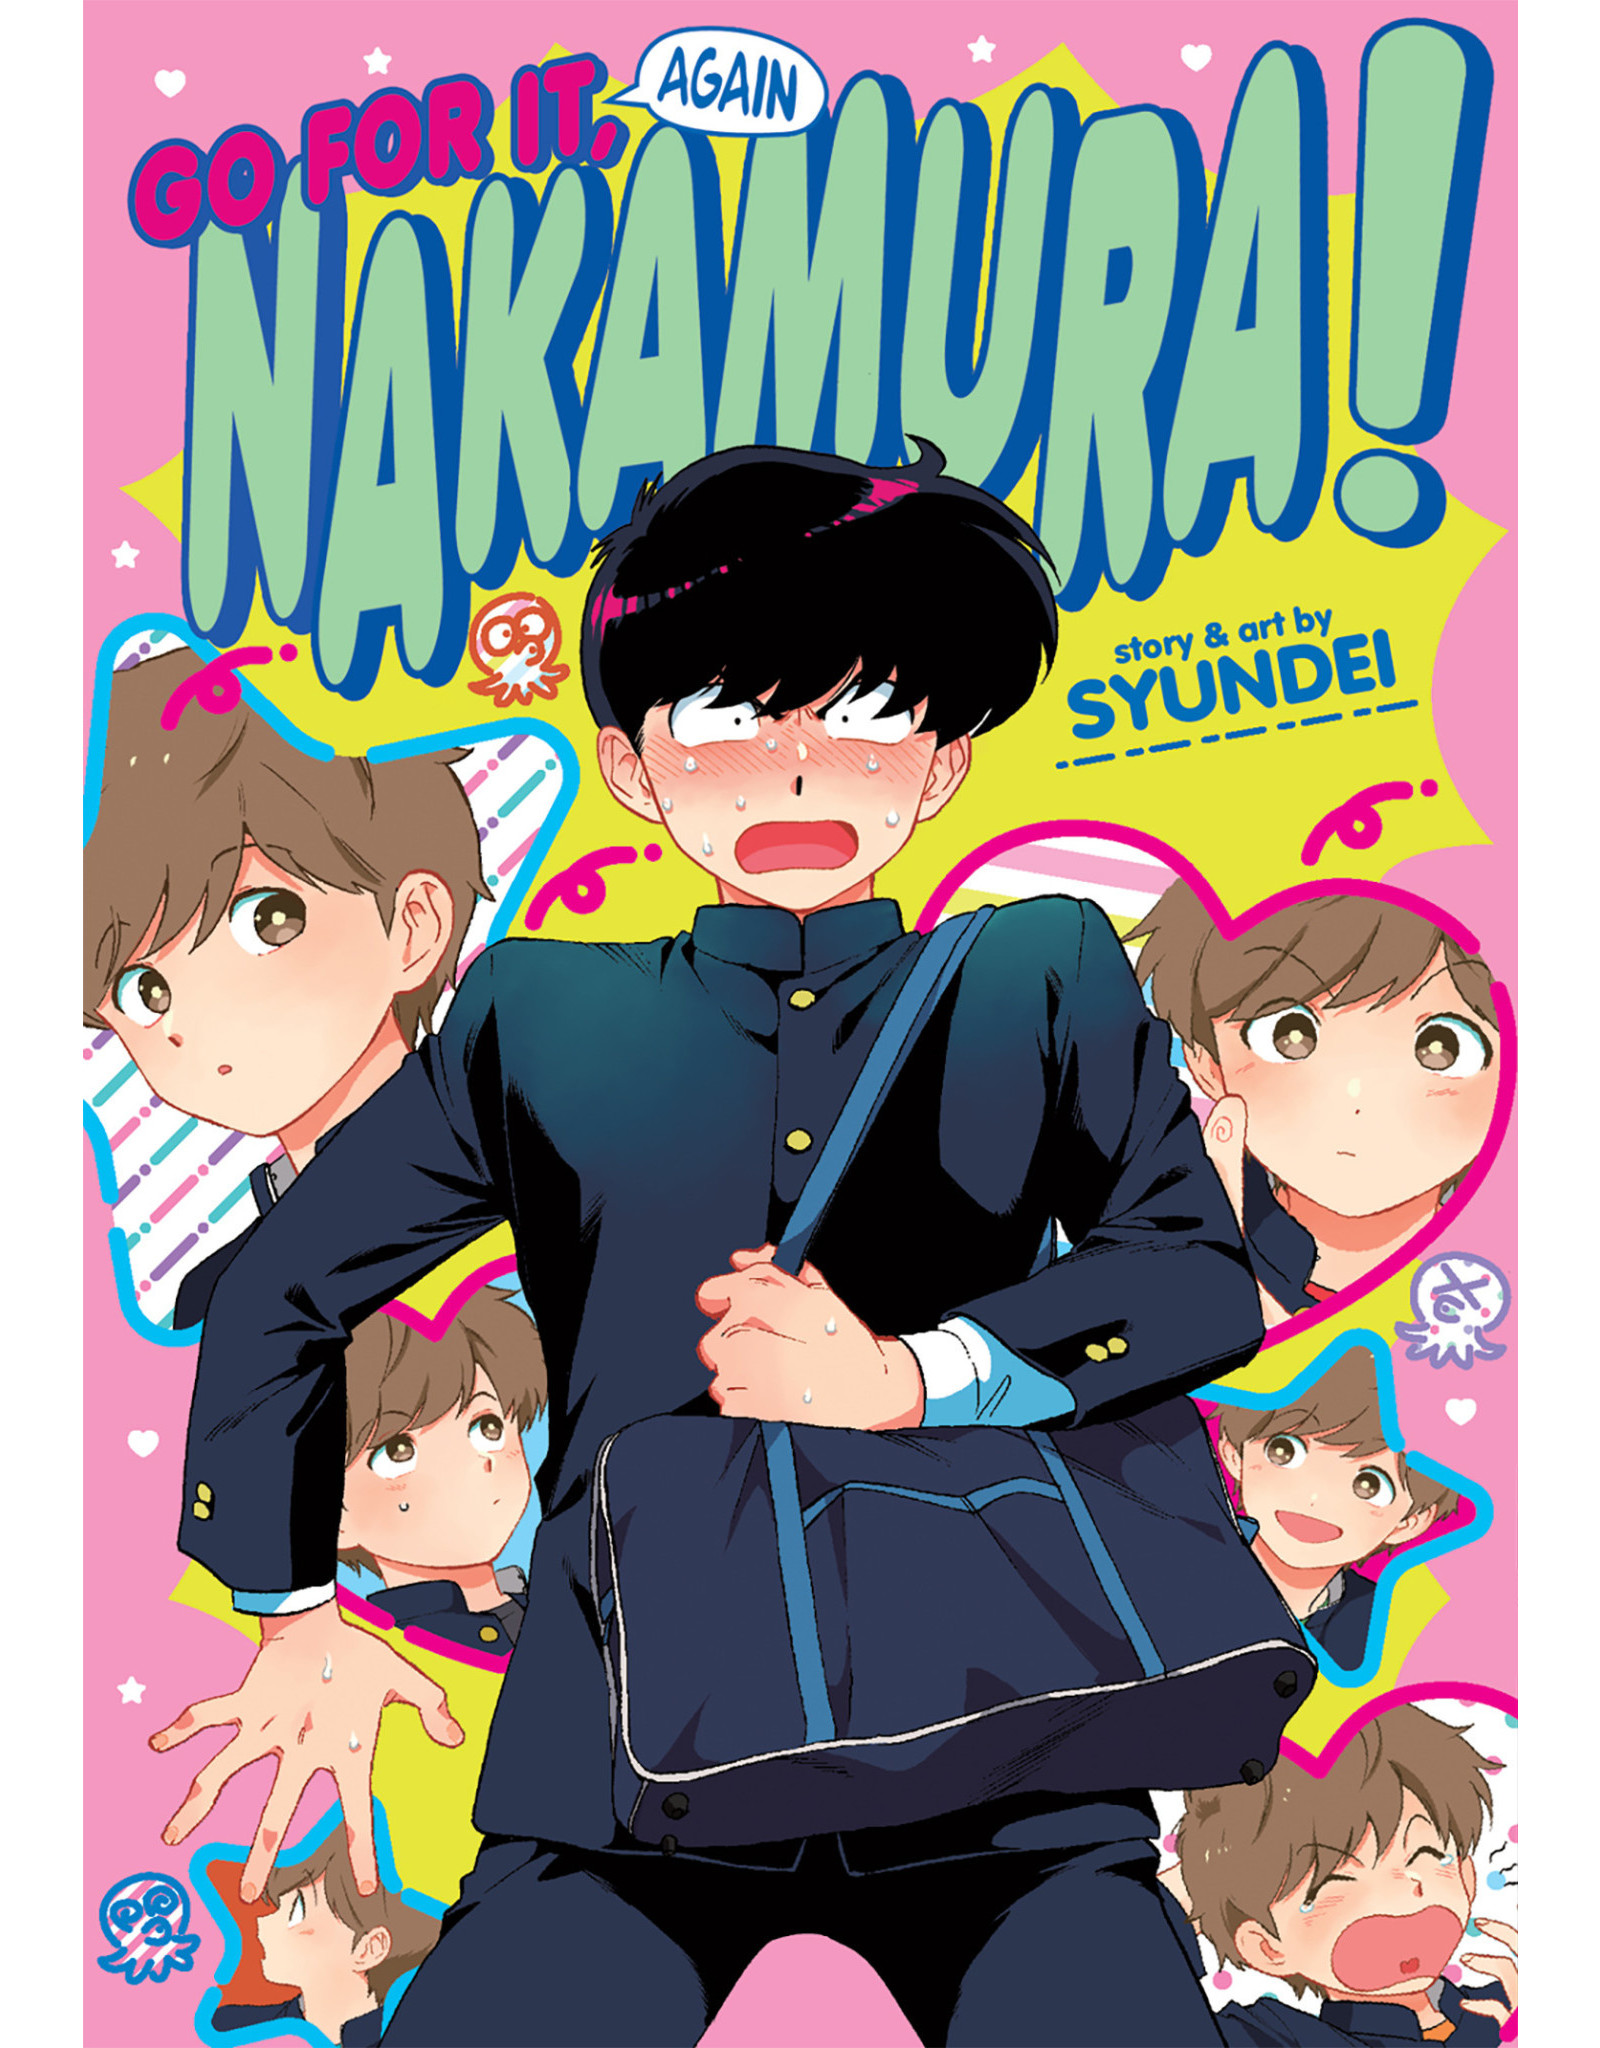 Go For It Again, Nakamura!! (Engelstalig) - Manga